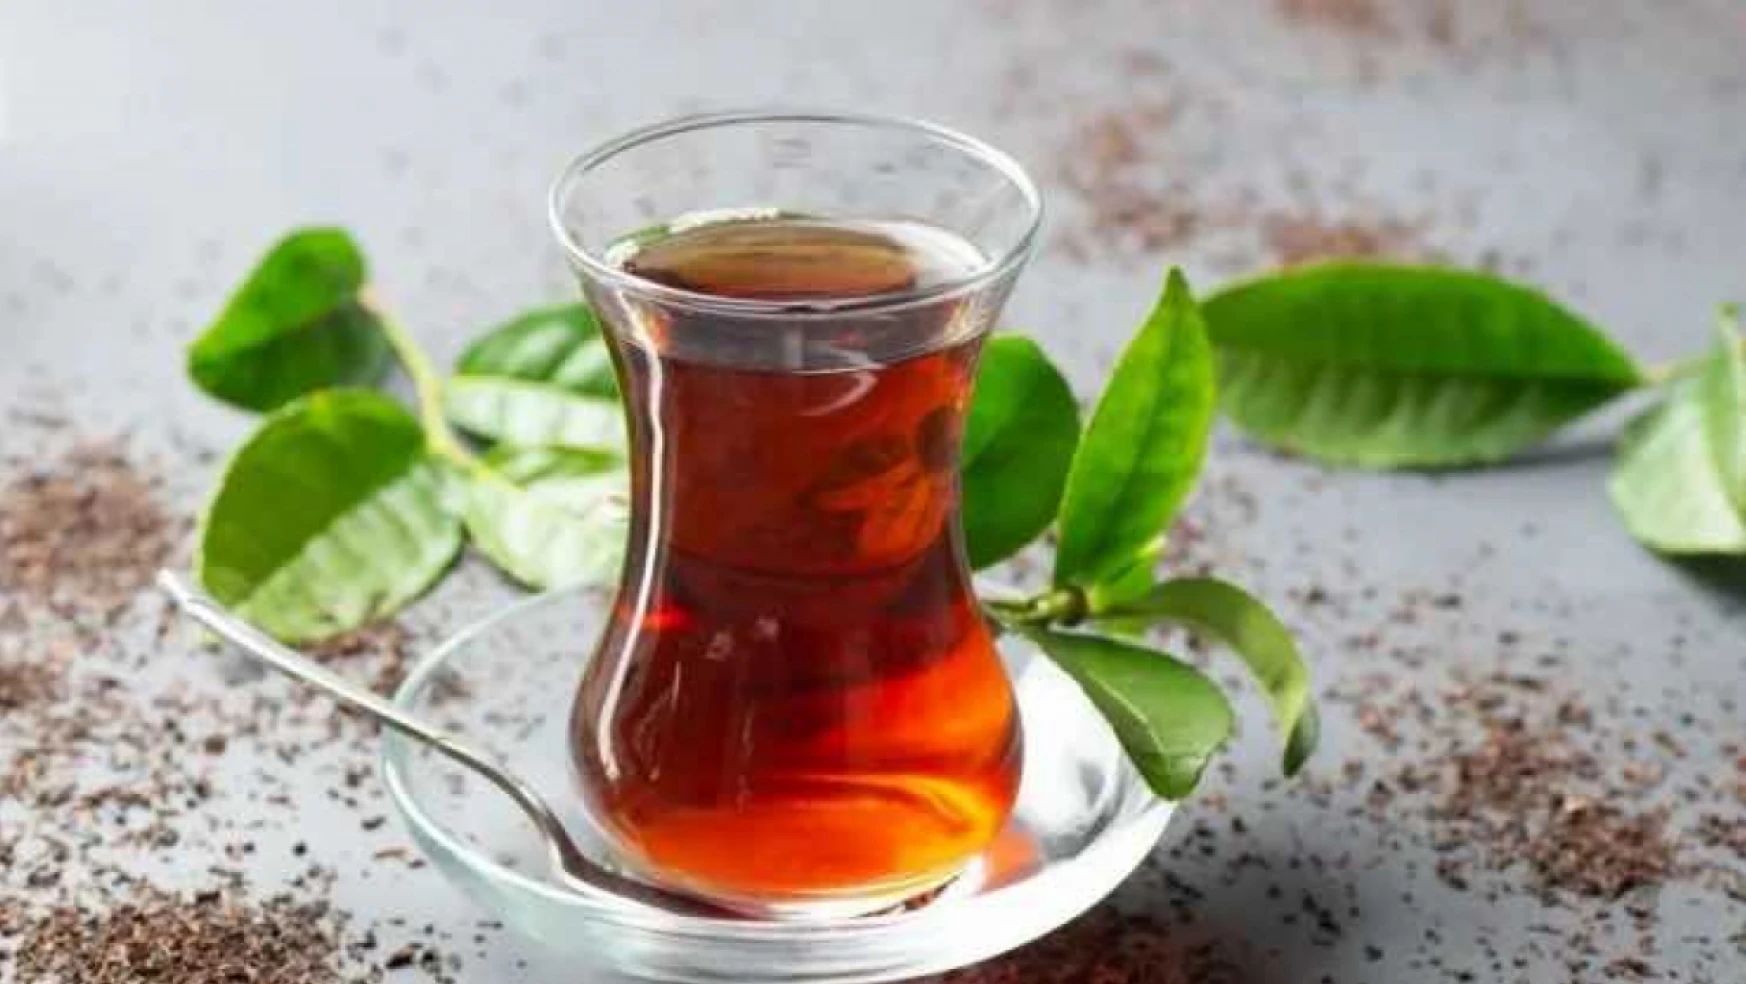 Emekliler bir bardak çayın 1 liraya satıldığı belediye tesisinde içlerini döktü